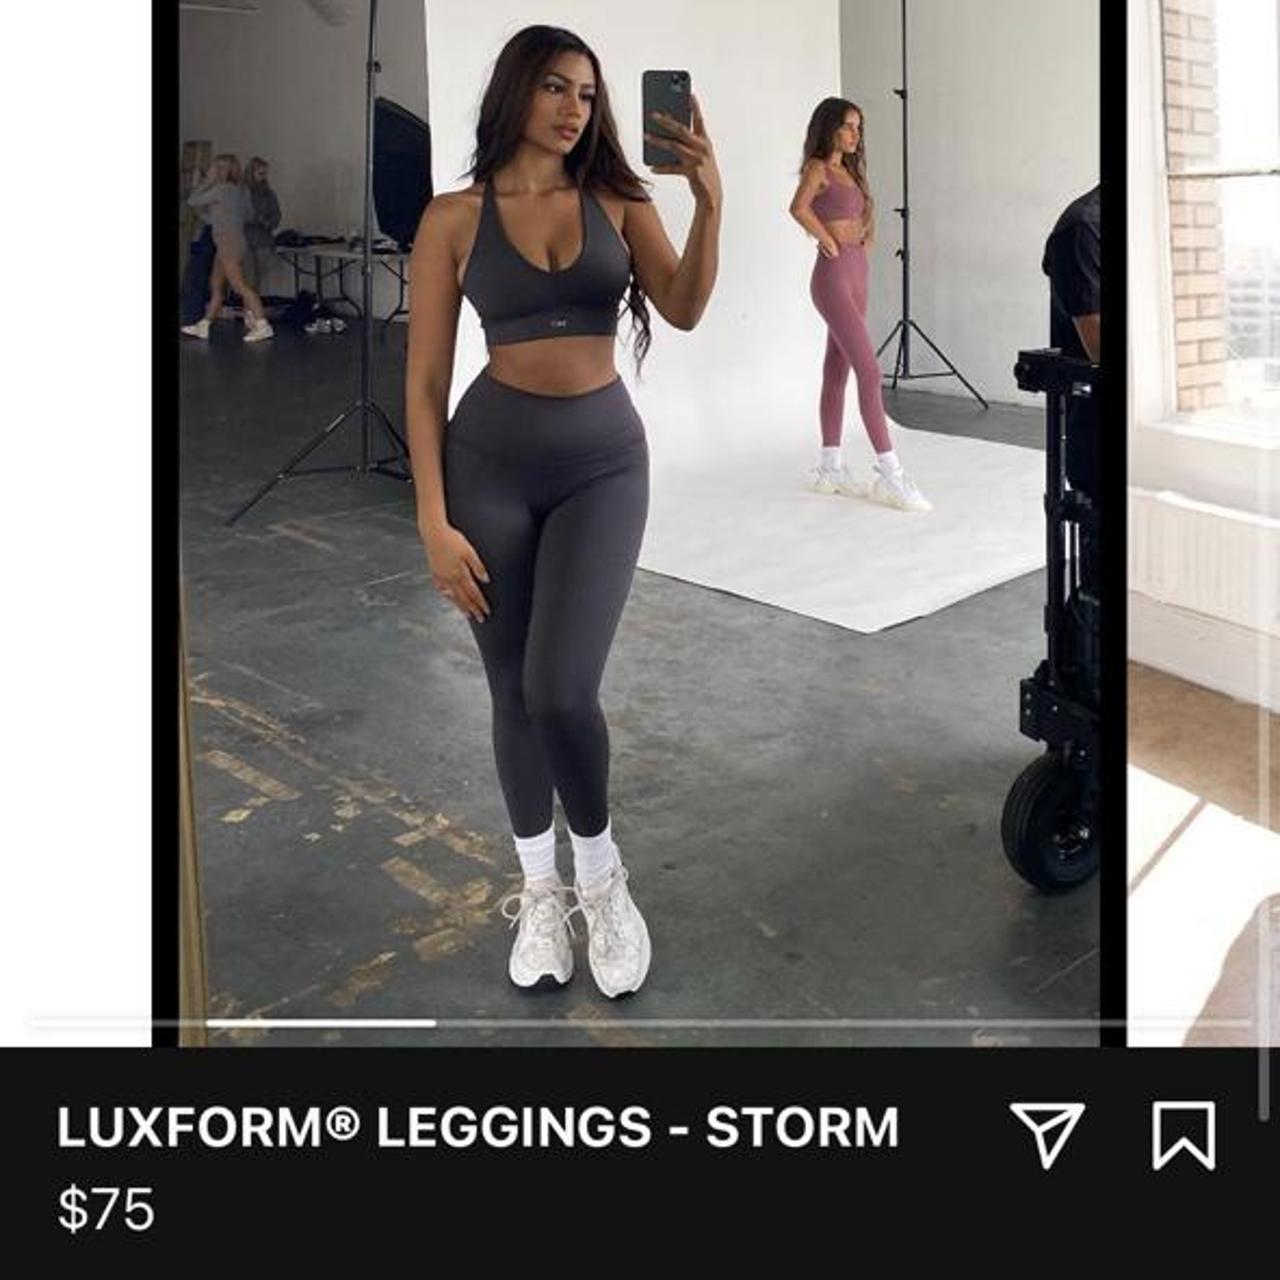 Product Image 1 - Set Active Luxform Legging
Color: Storm
Size: